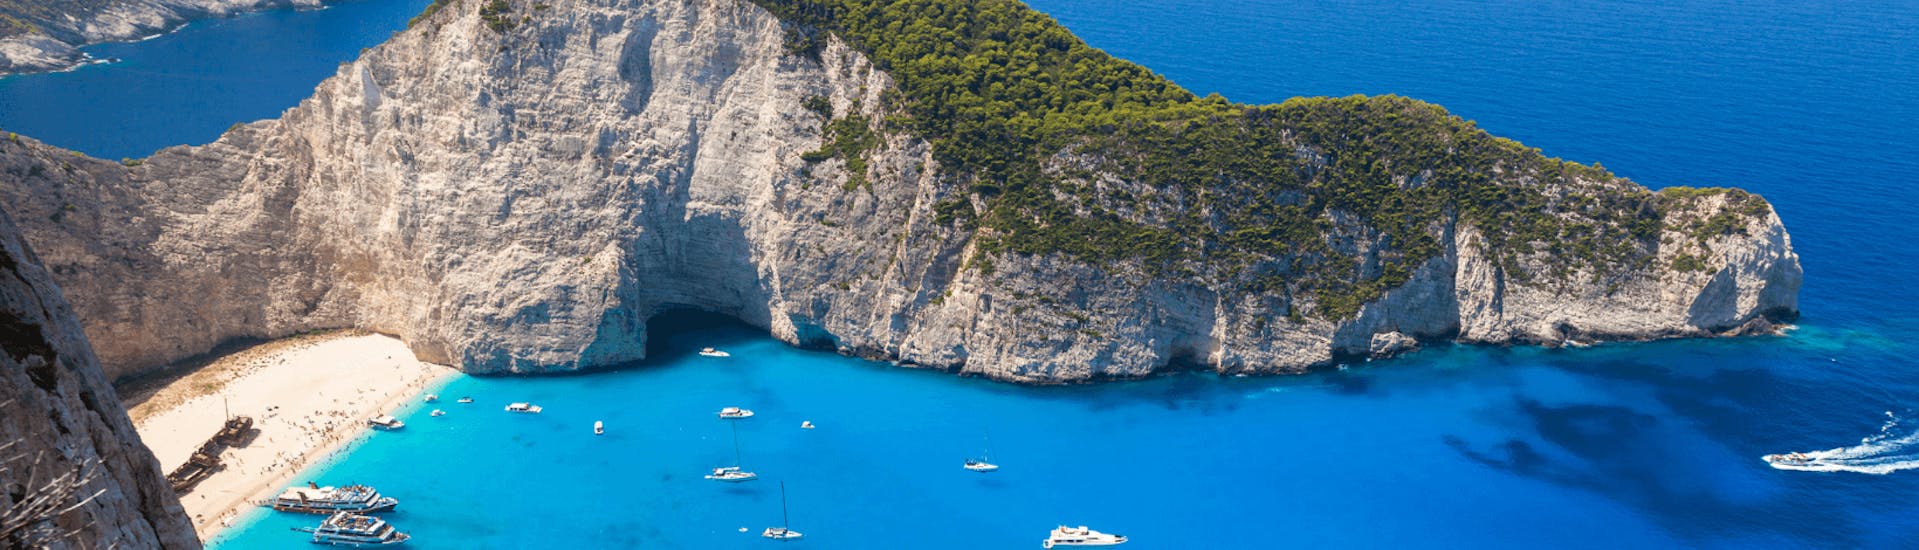 Balade en bateau Argasi - Grottes bleues Zakynthos avec Baignade & Visites touristiques.